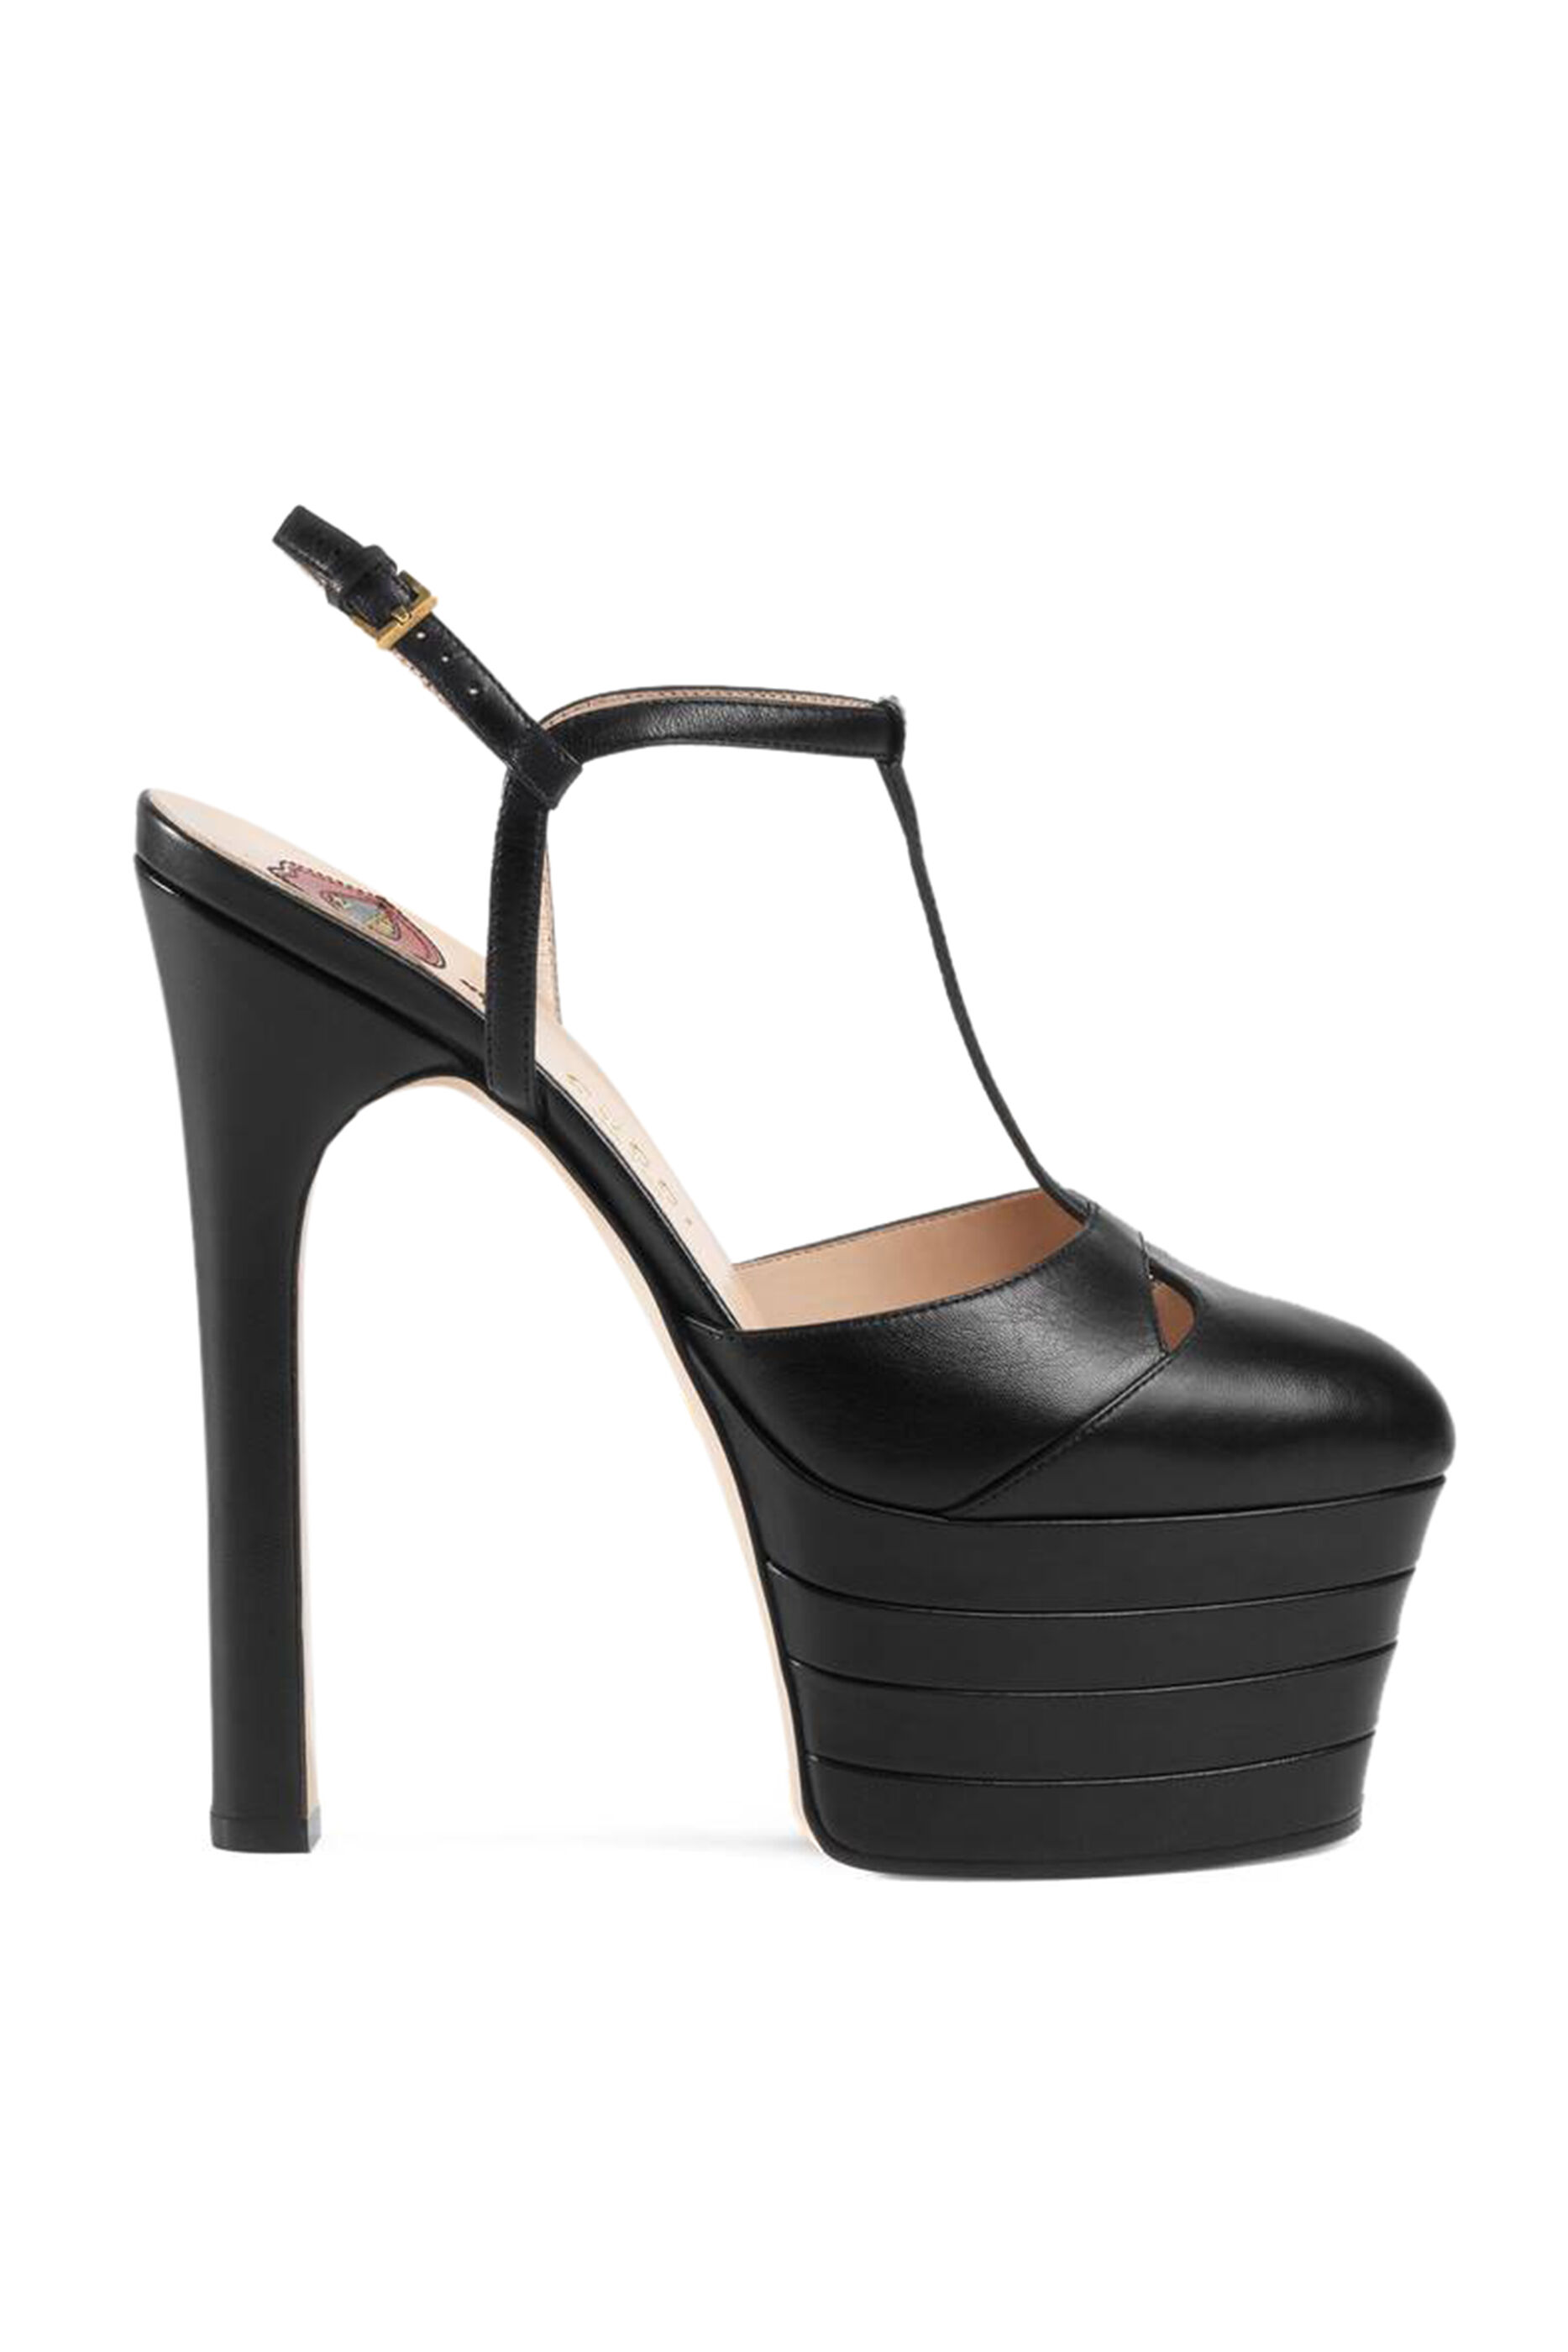 gucci platform heels